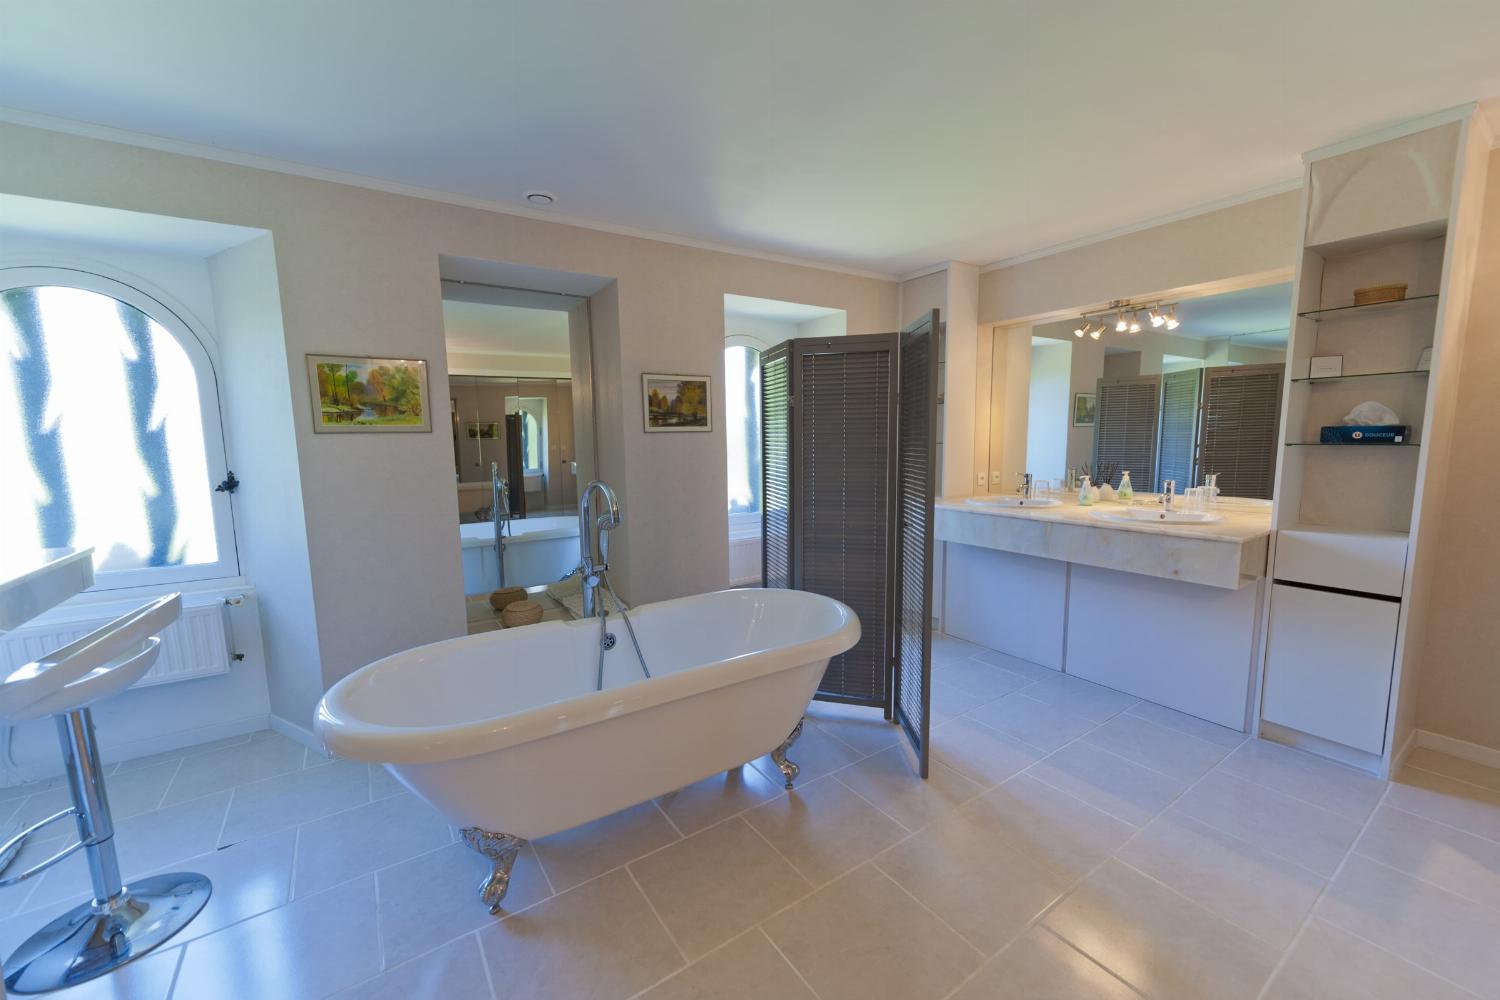 Salle de bain | Maison de vacances dans la Loire